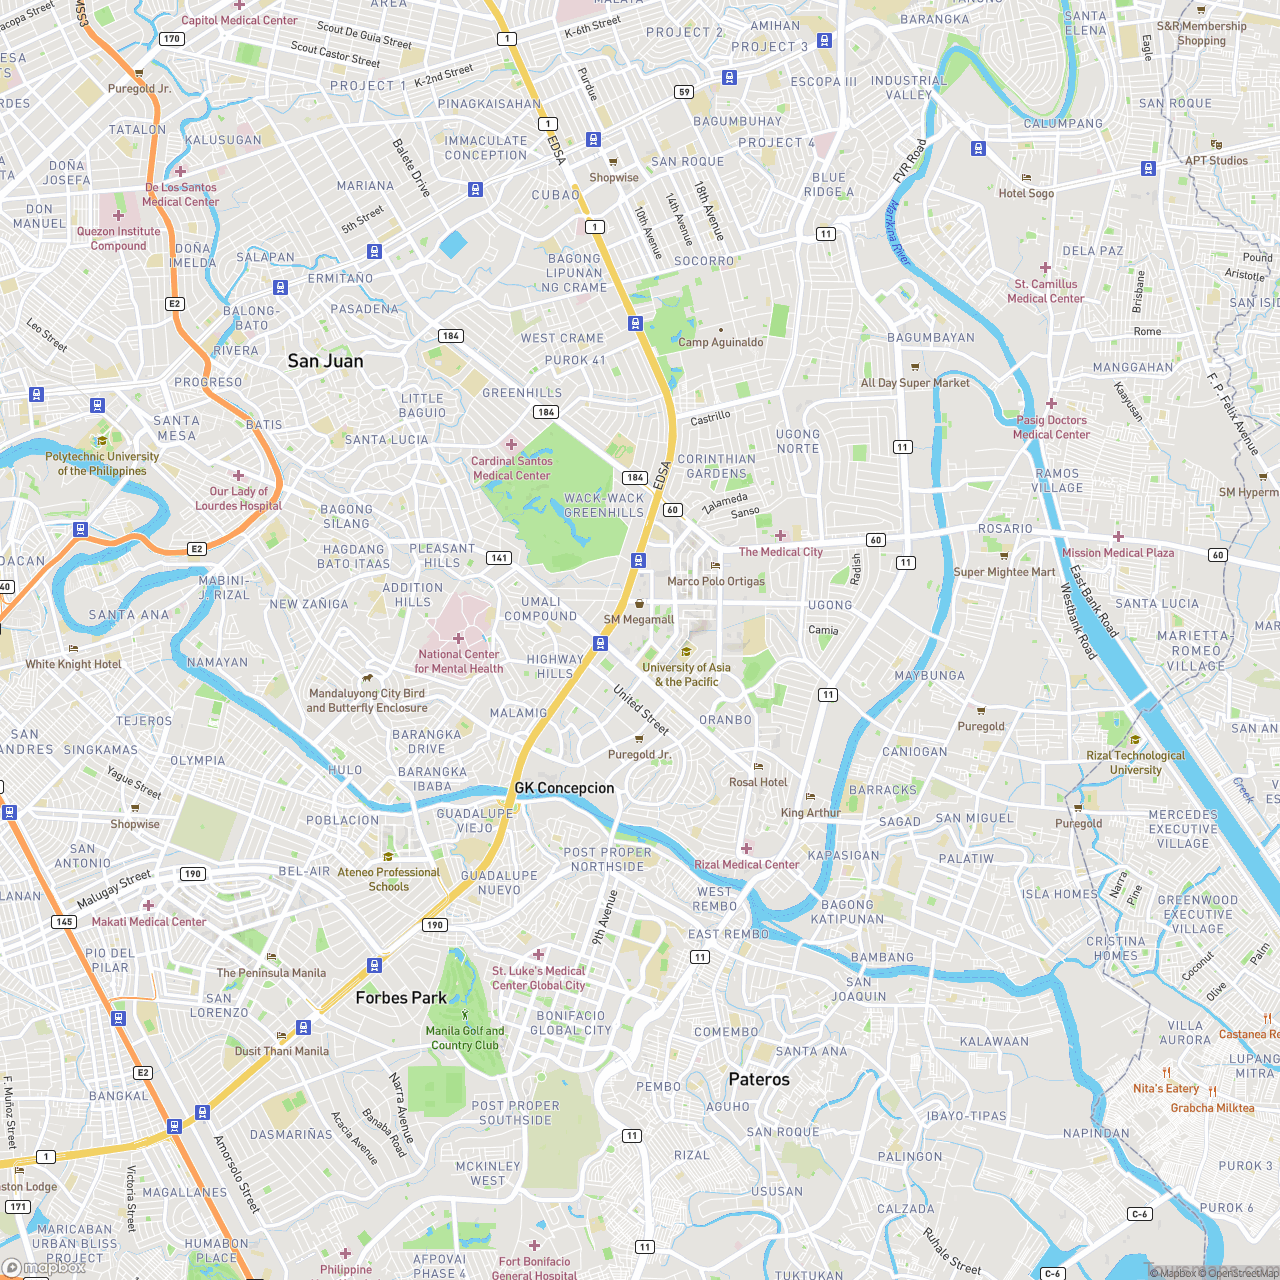 Hotels in Manila Map